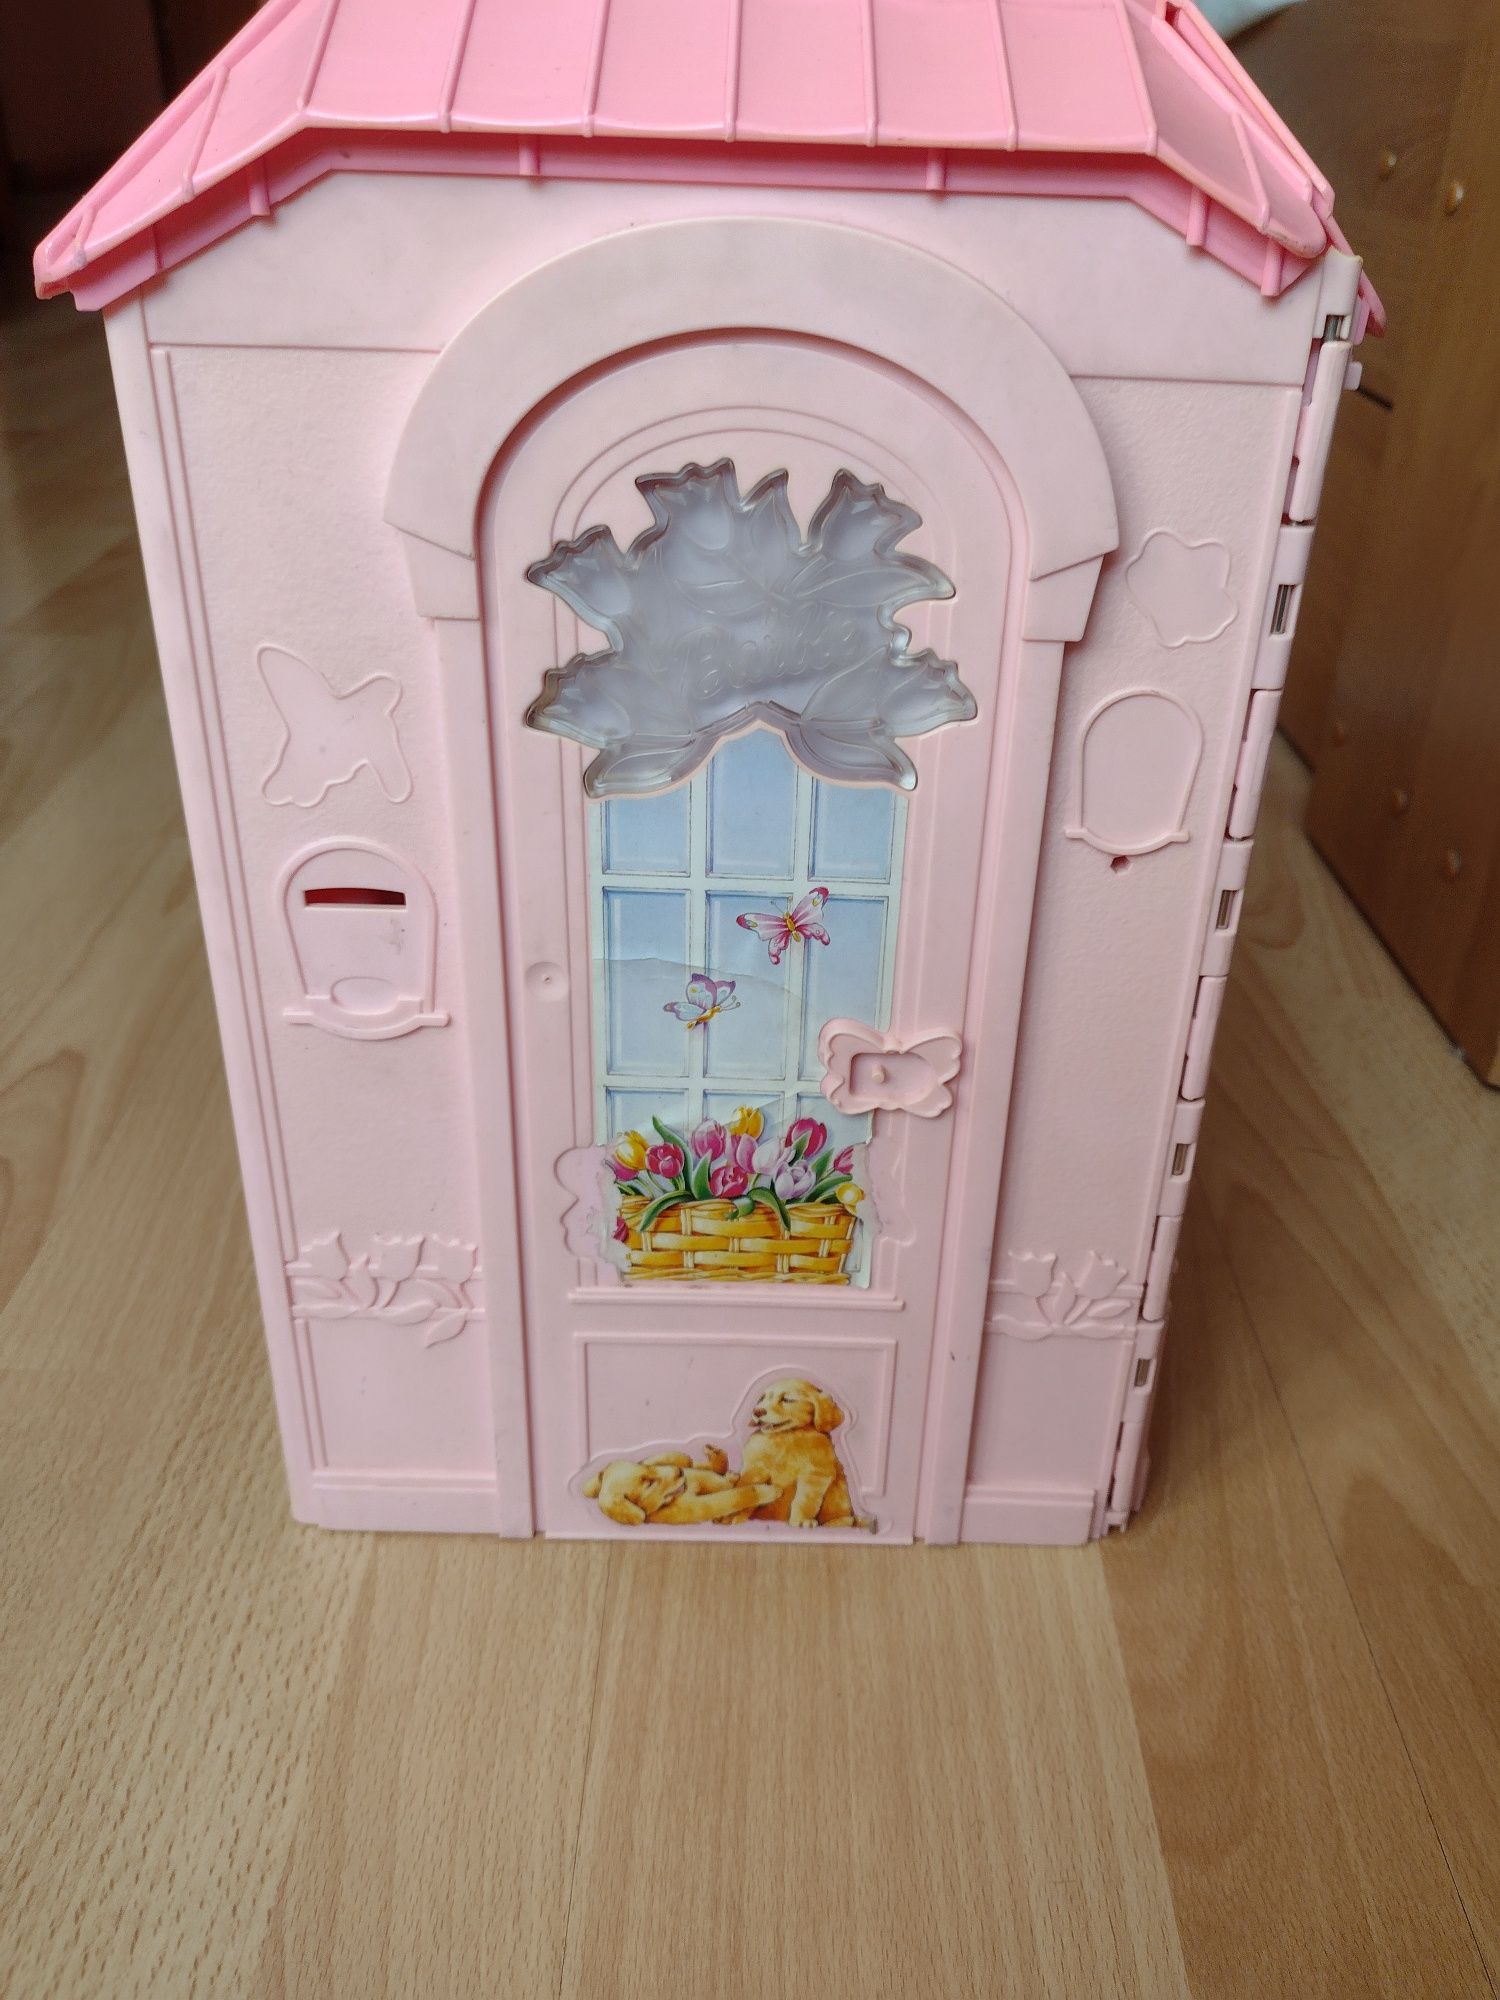 Domek dla lalek firmy Mattel z 2000roku